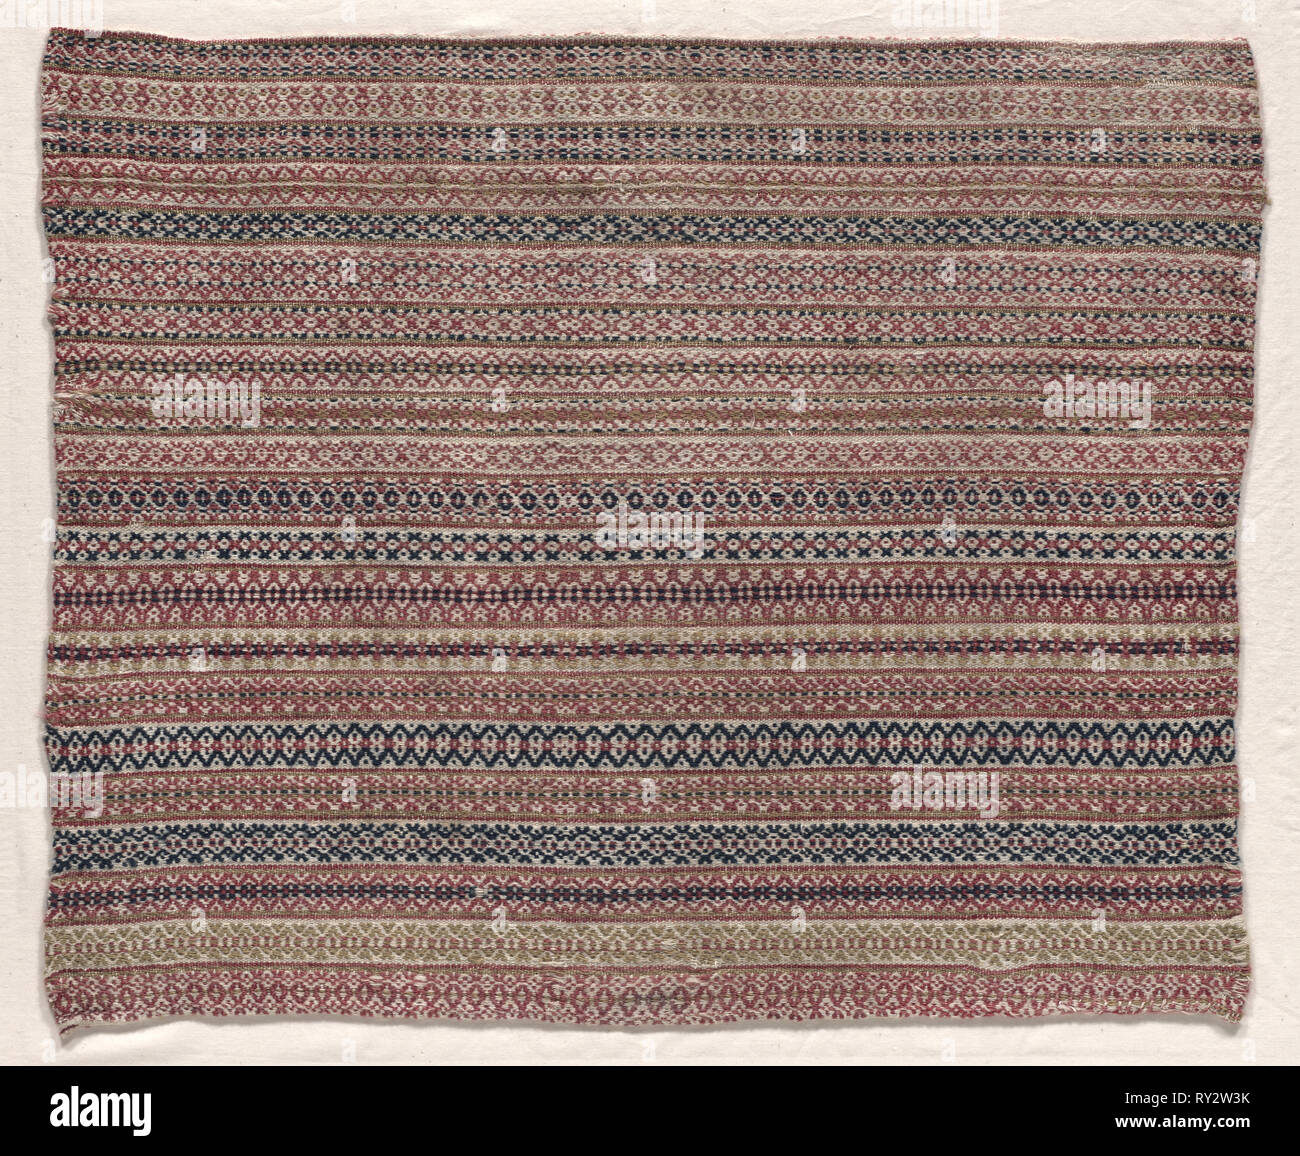 Textile, de laine, tissés, début du xixe siècle. La Suède, Dalécarlie, début du xixe siècle. Laine ; moyenne : 48,3 x 59,7 cm (19 x 23 1/2 po Banque D'Images